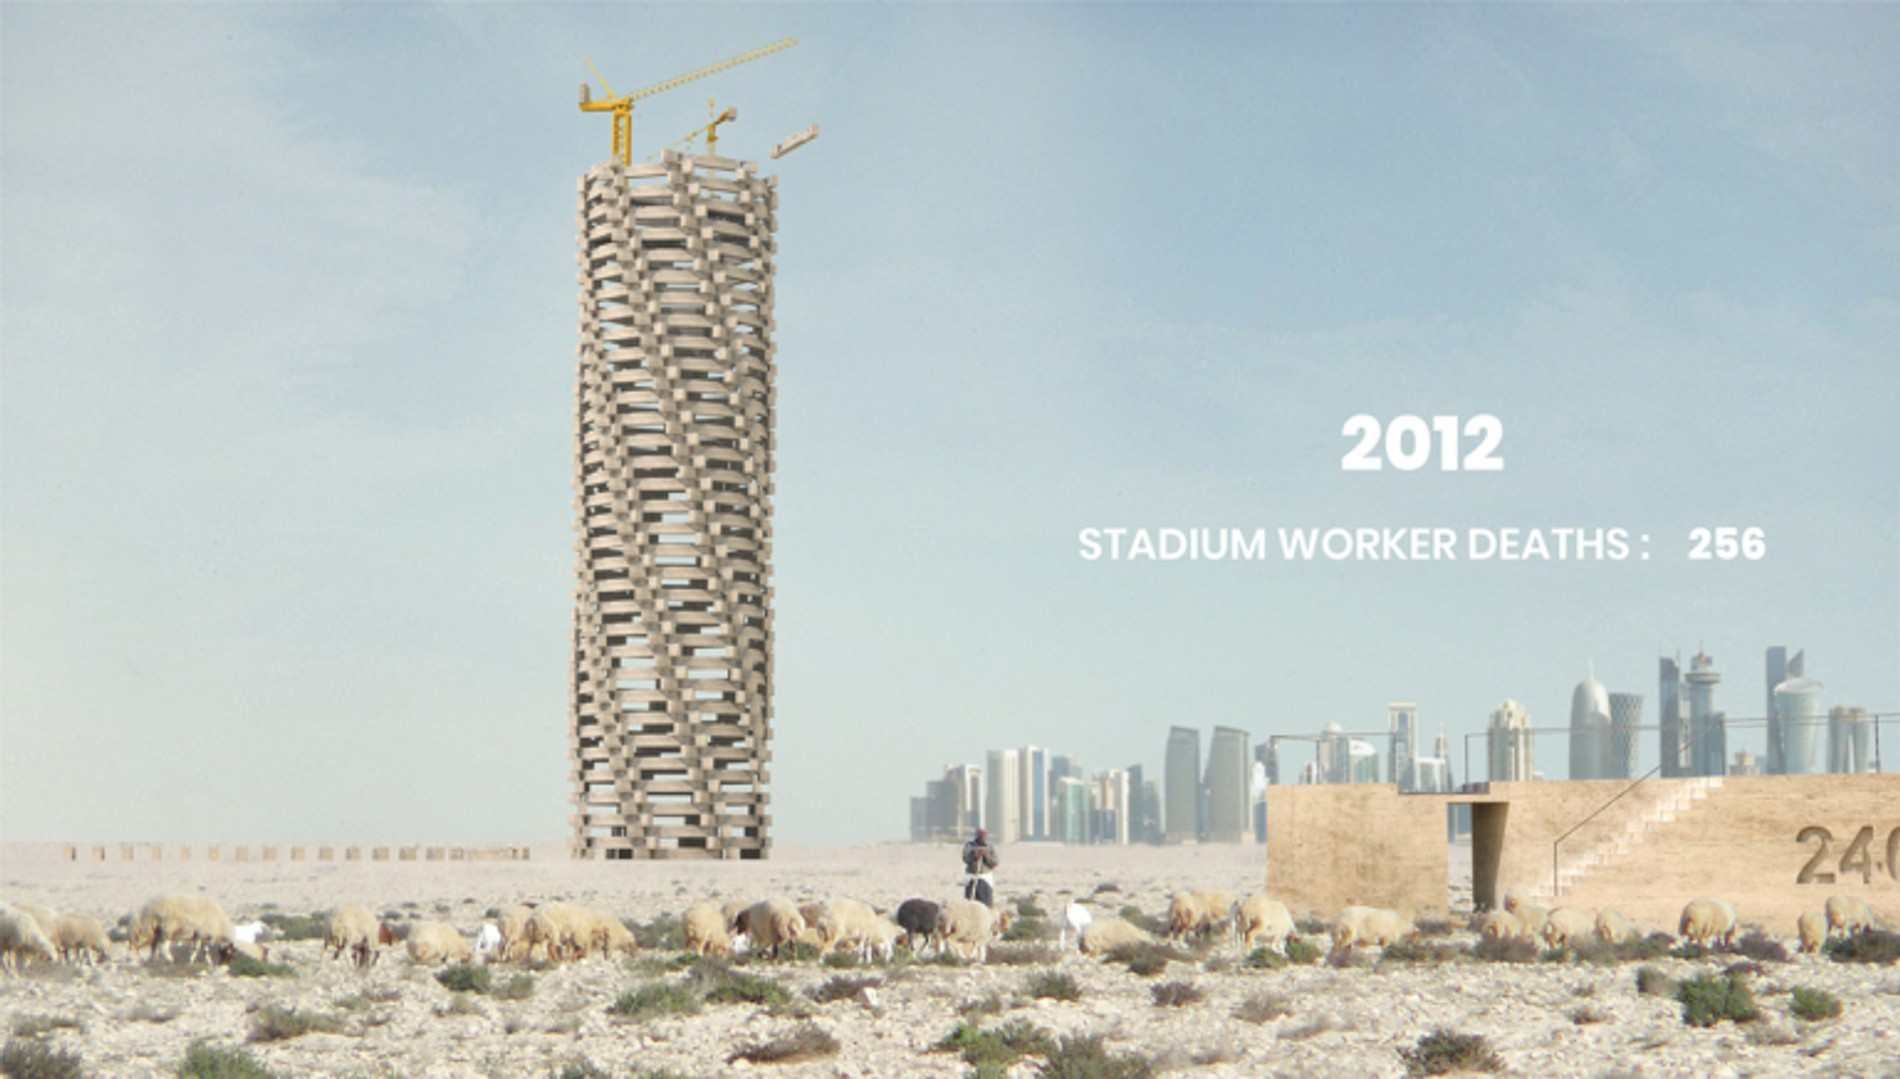 Qatar World Cup Memorial 2022
Фото: week.archi